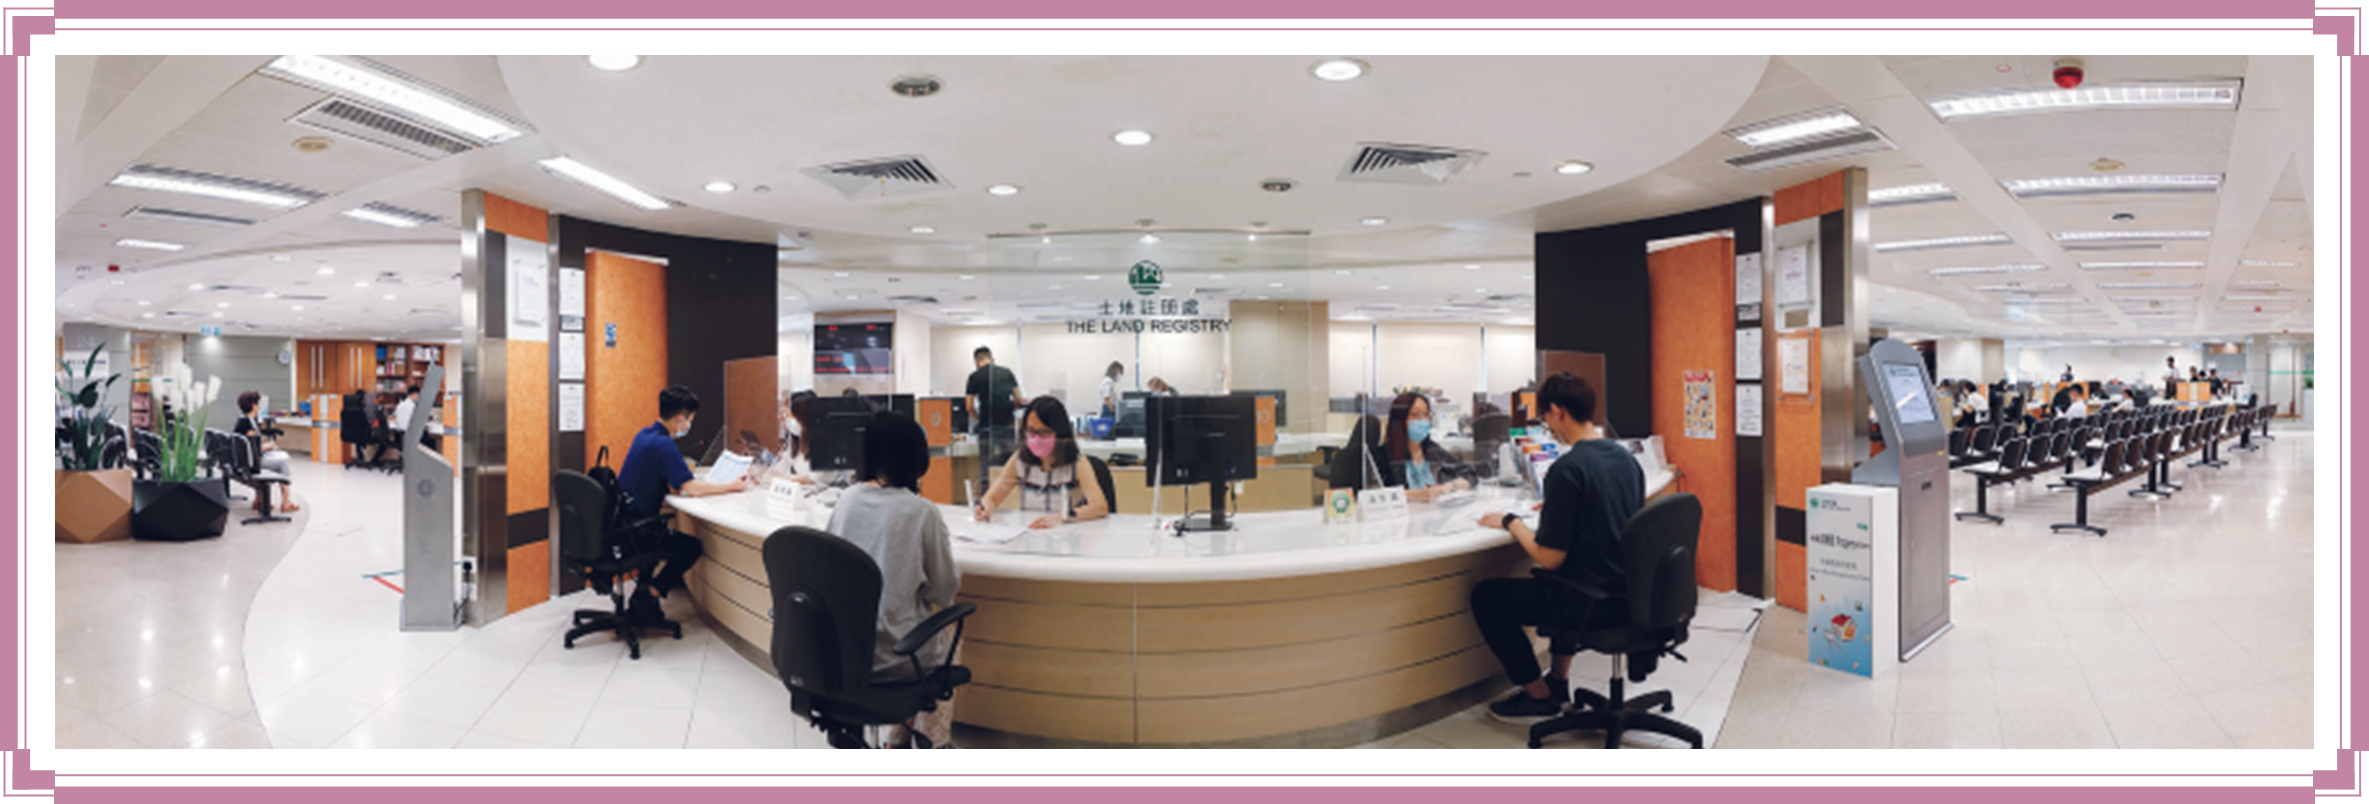 金鐘道客戶服務中心提供註冊及查冊服務